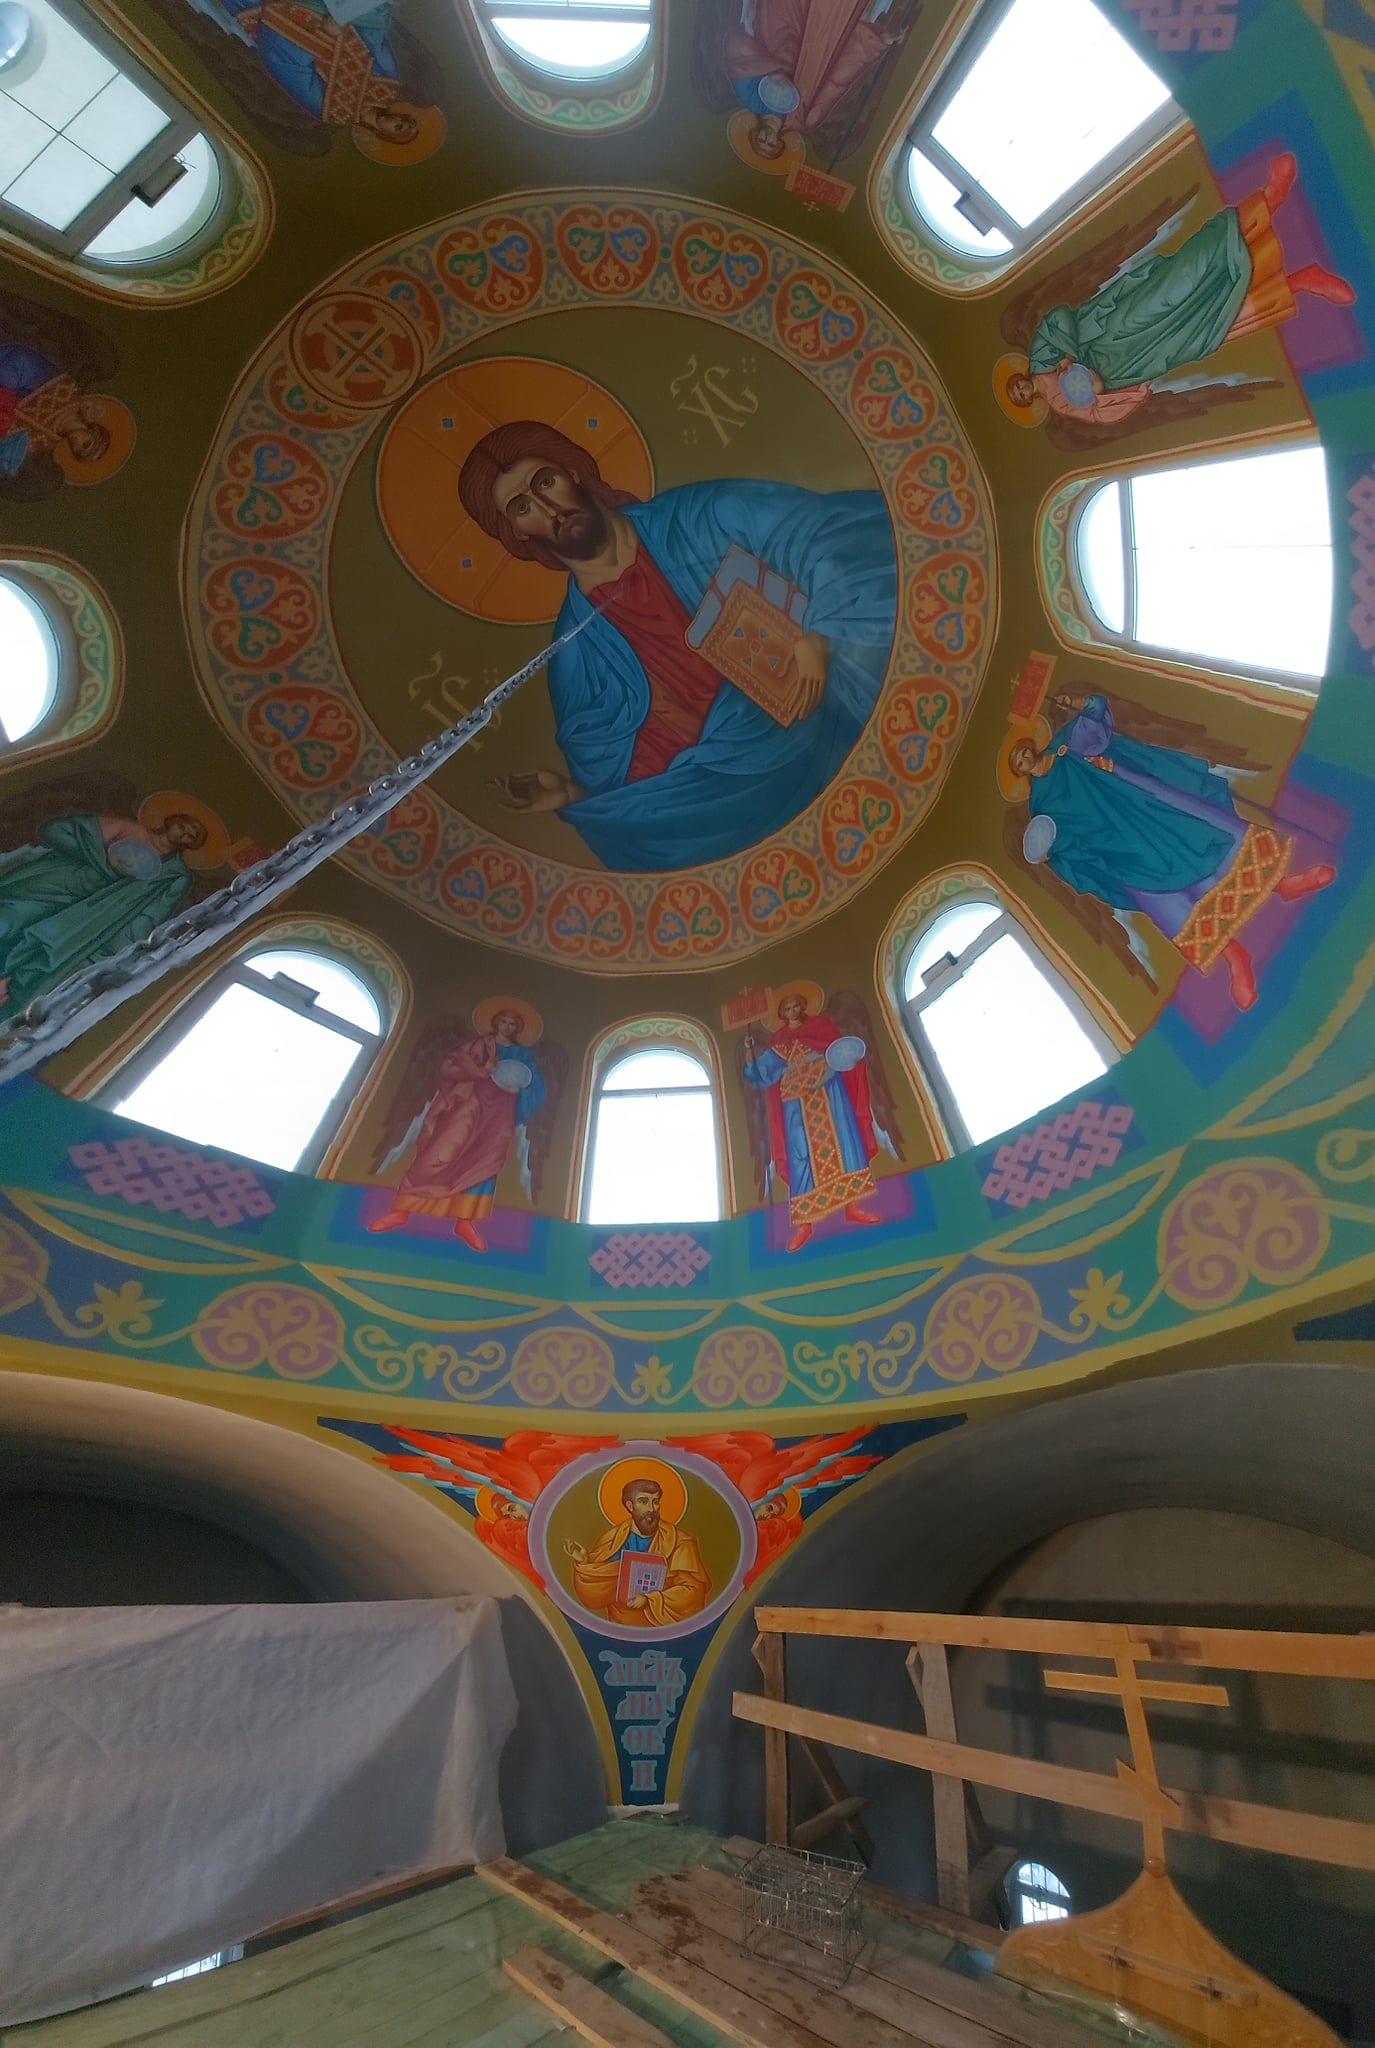 Божественная красота: под Днепром расписали купол в храме (Фото)